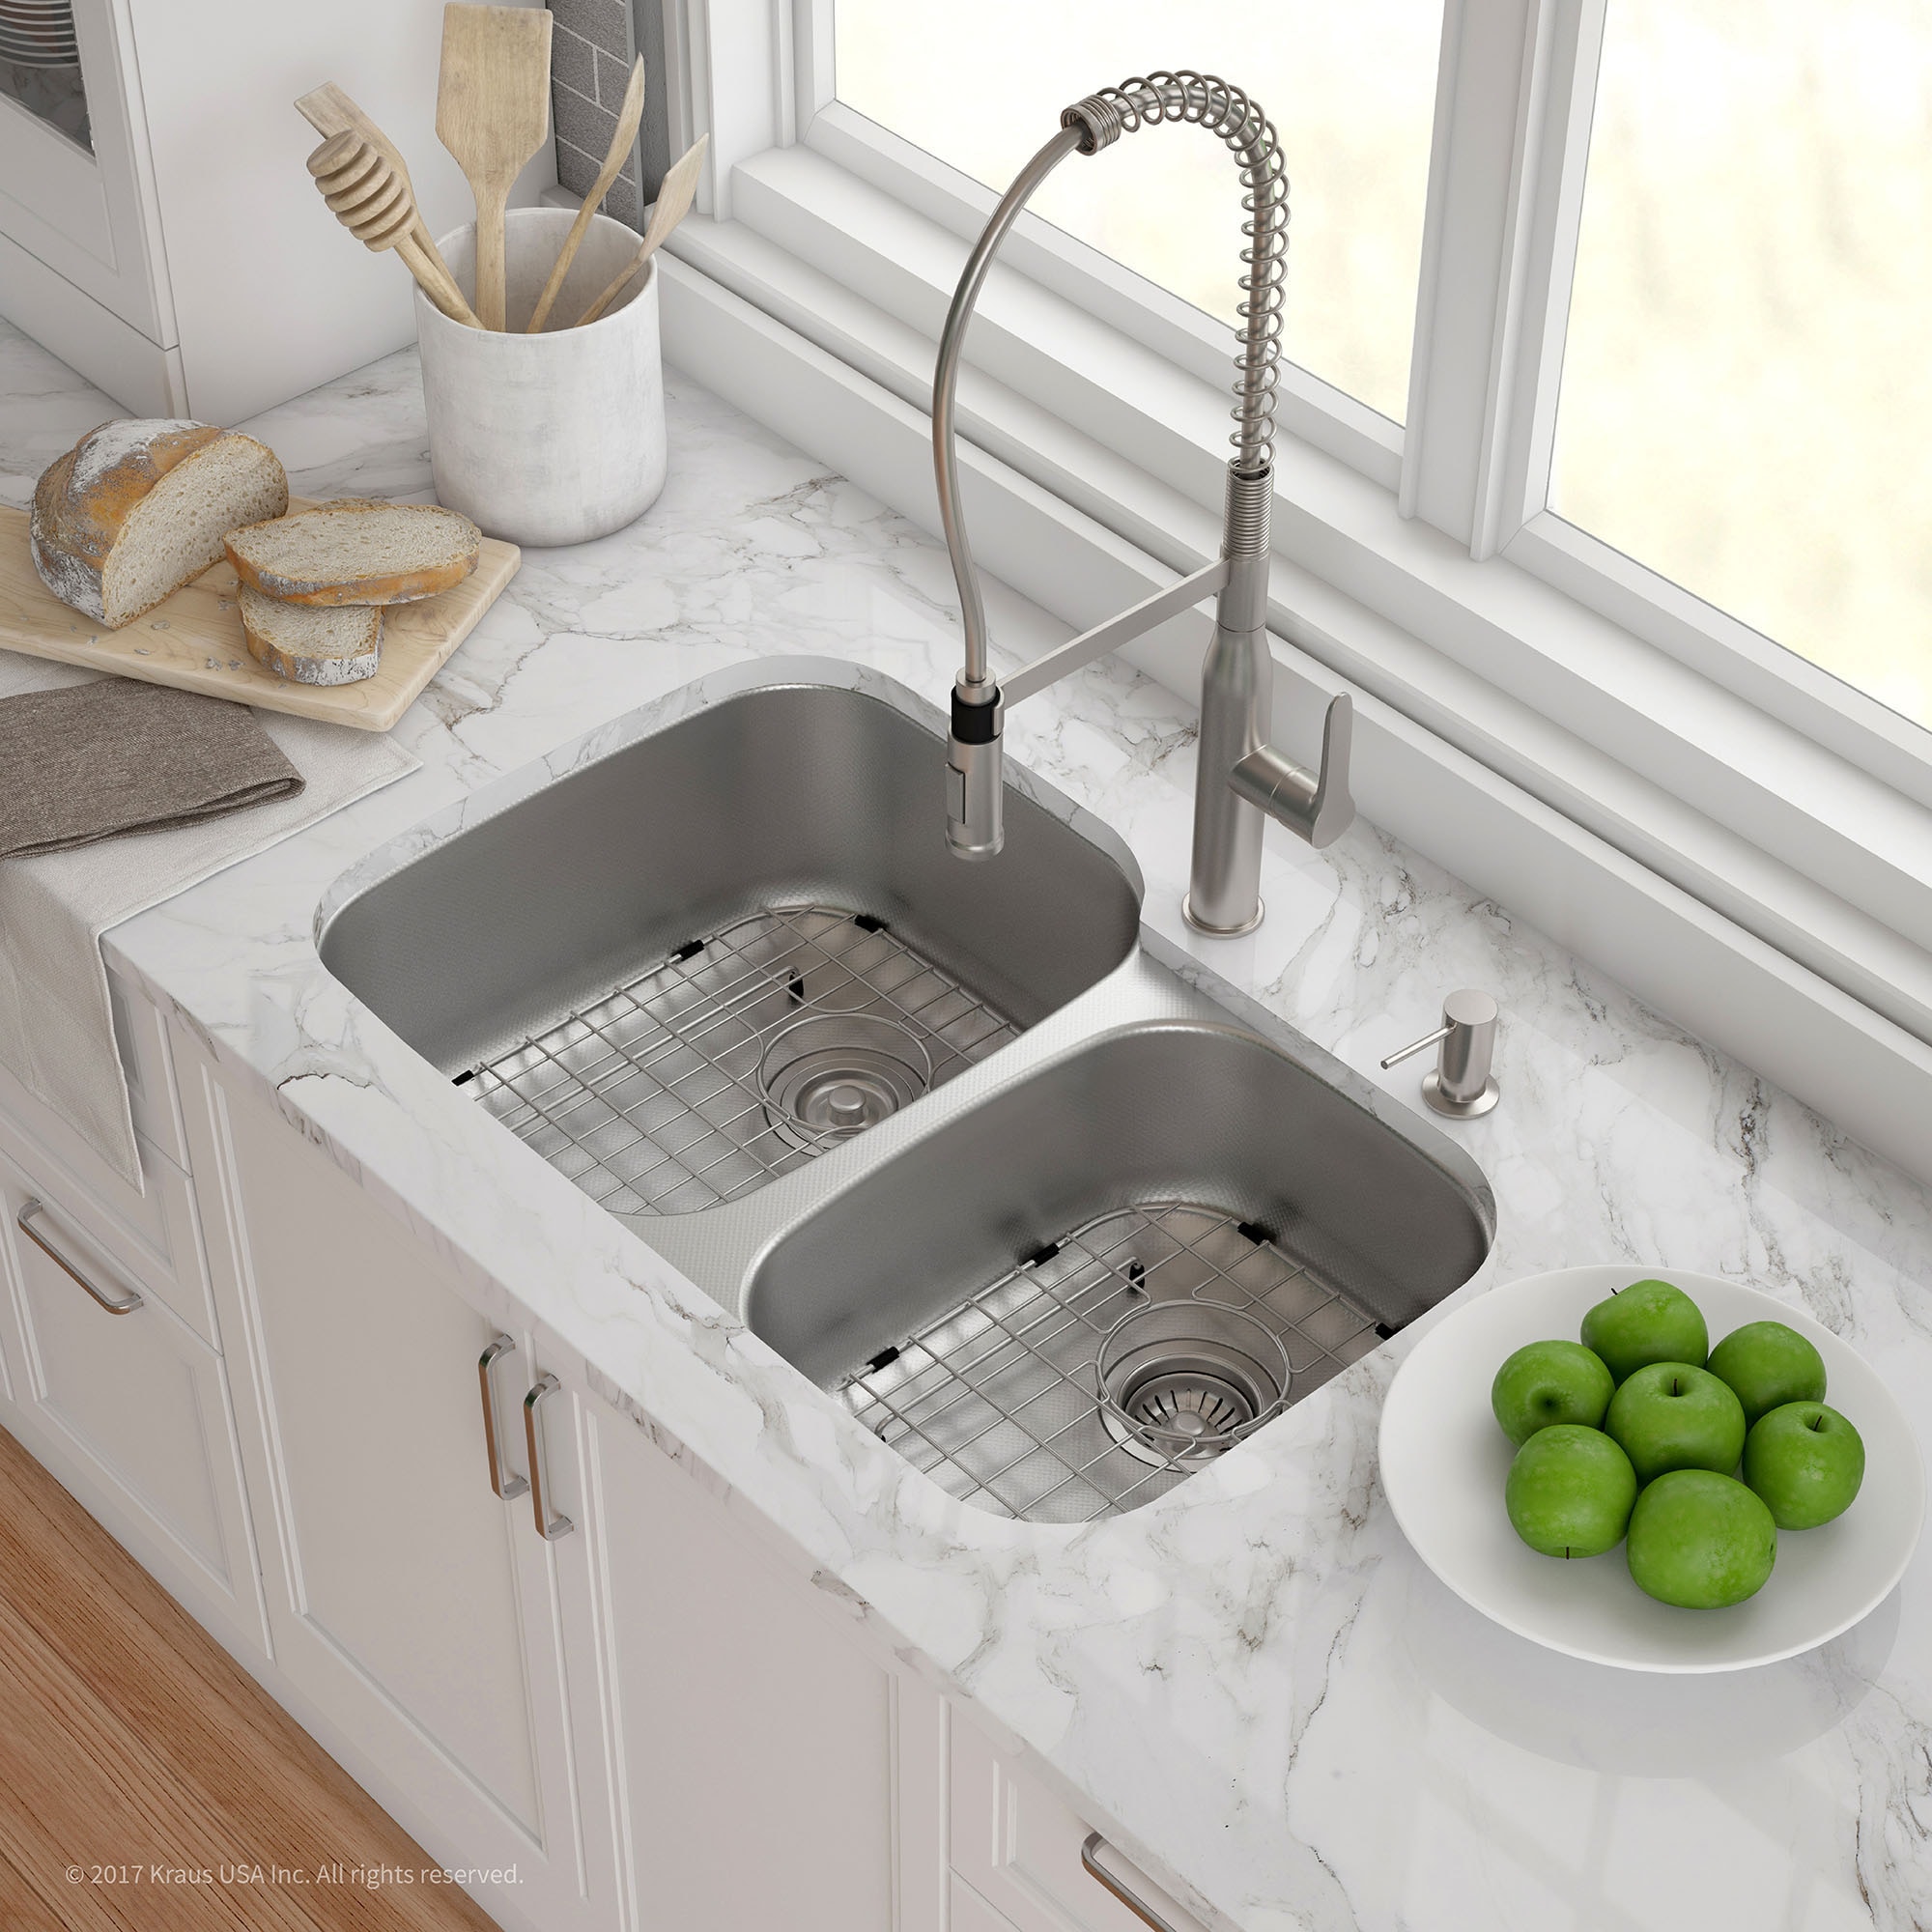 Kraus Standart Pro 32 Undermount Kitchen Sink + Faucet Combo - Stainless Steel